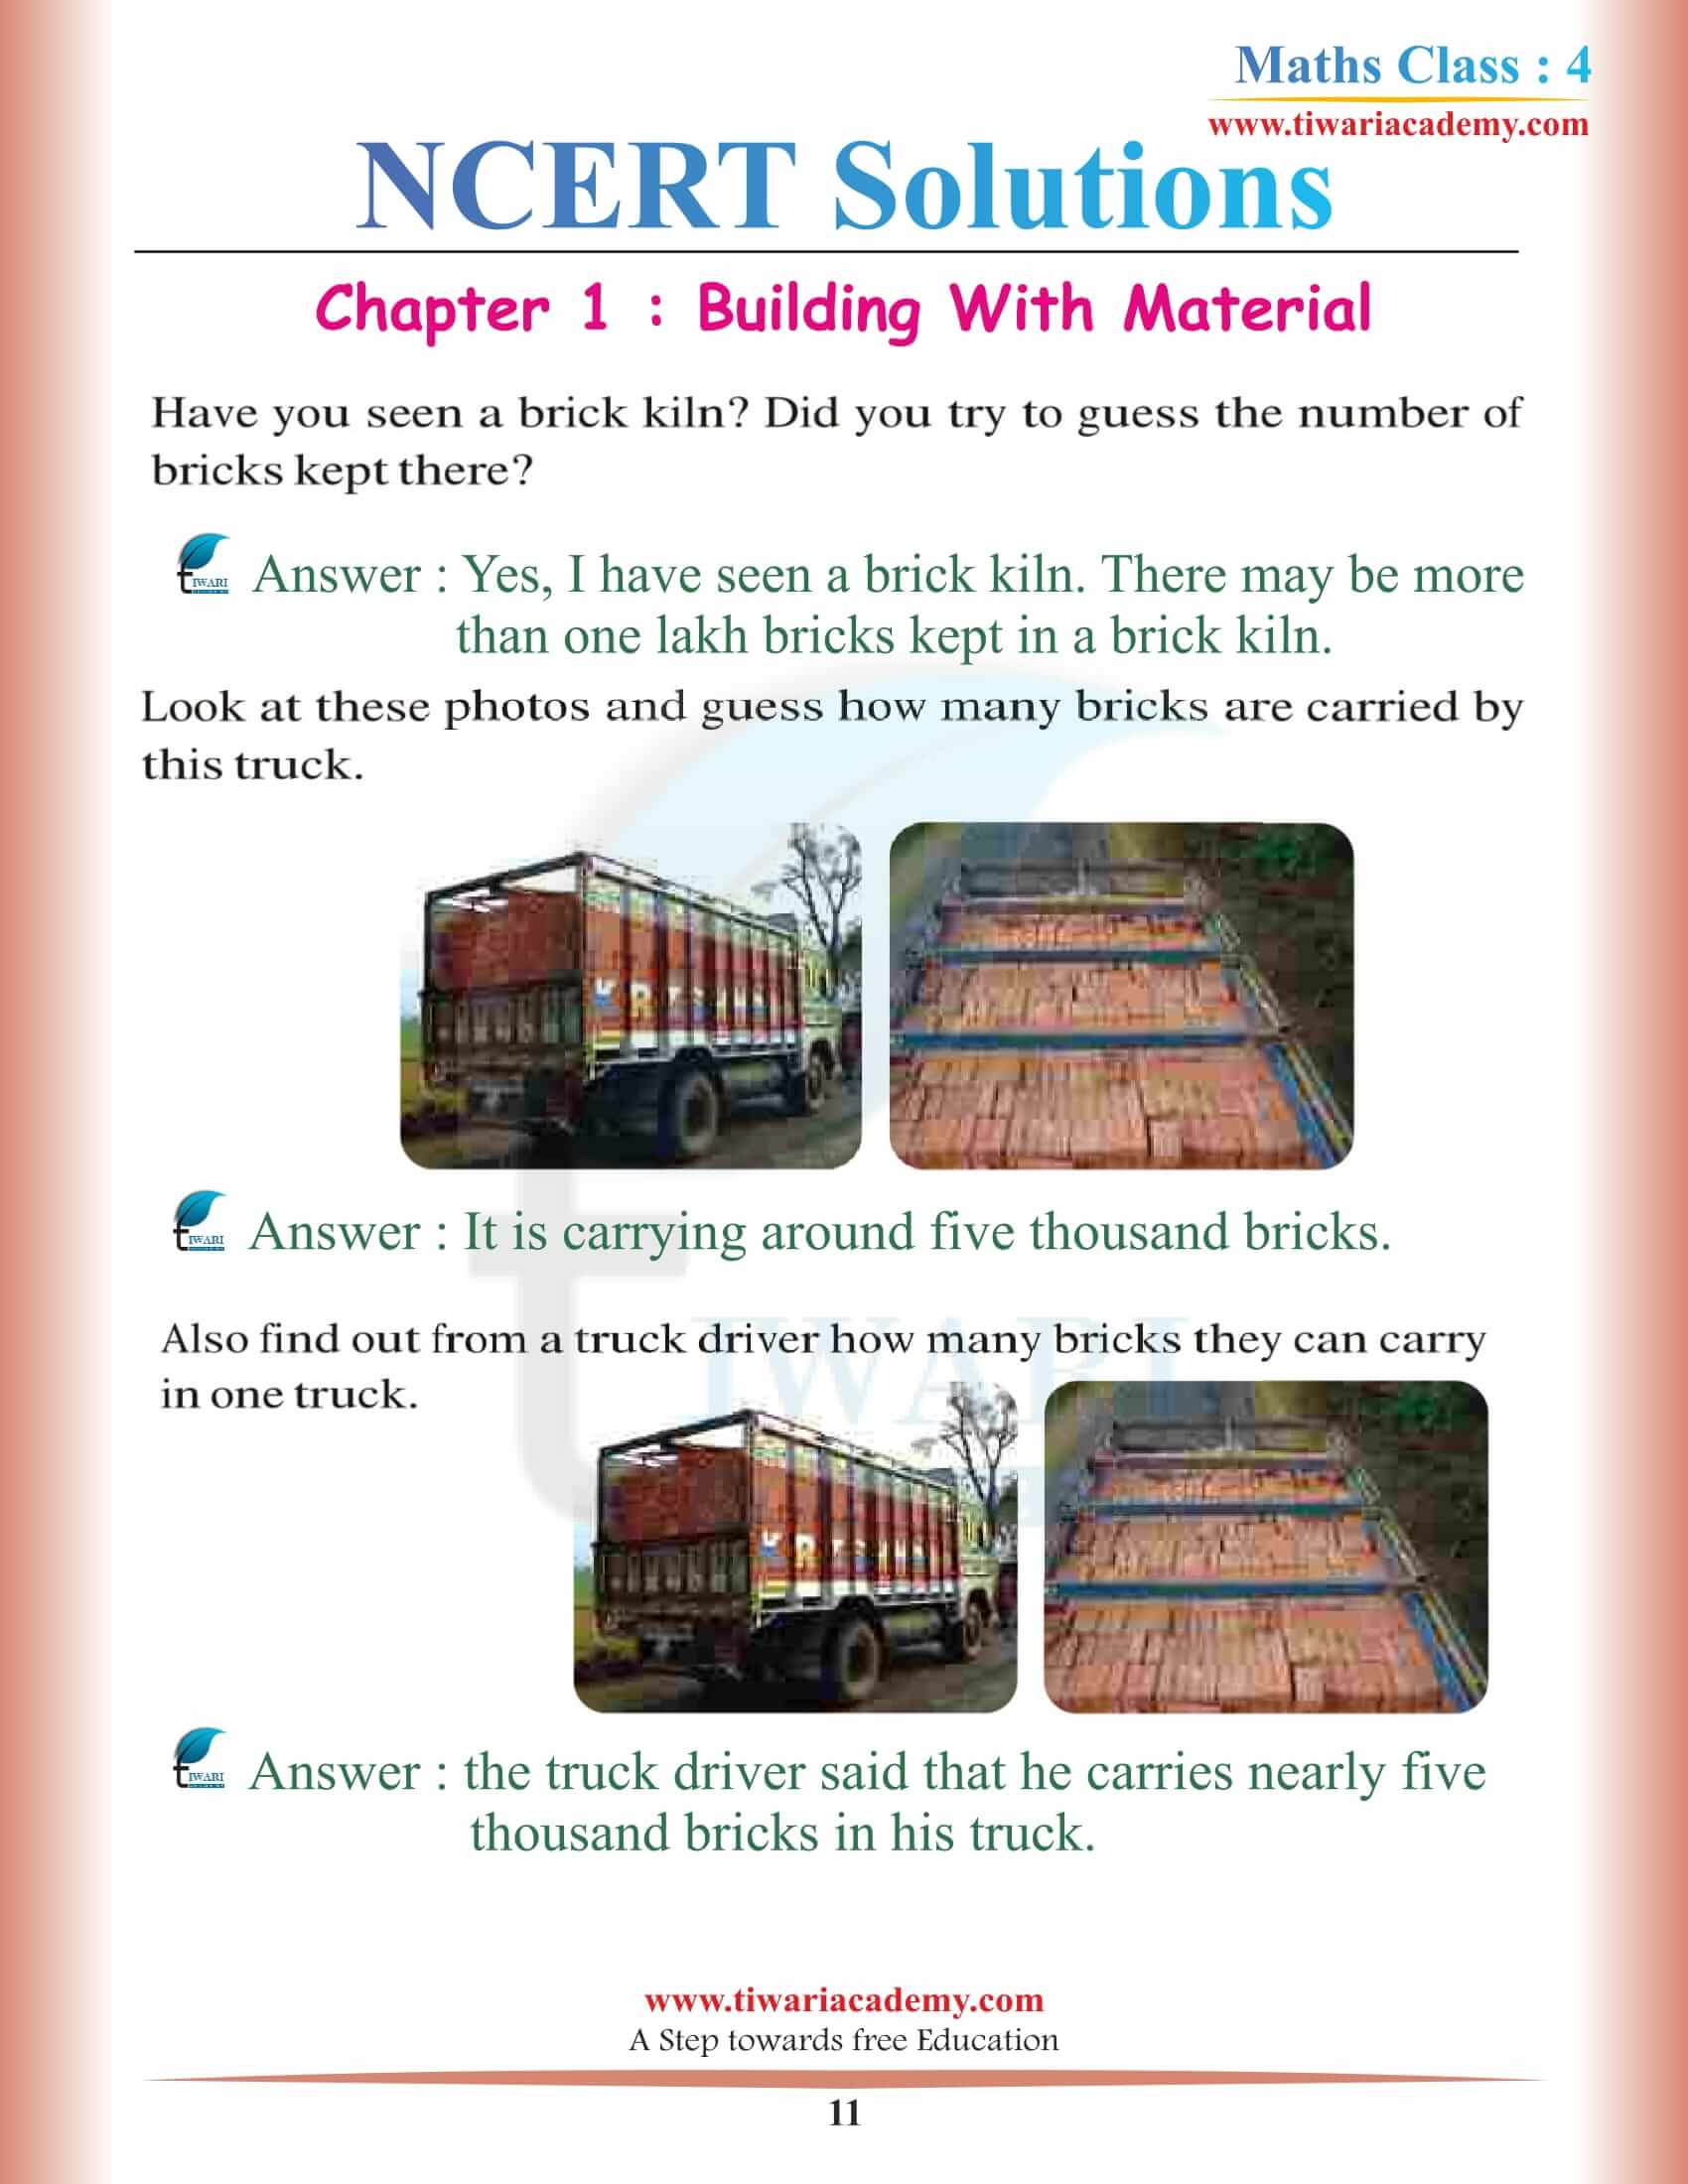 Class 4 Maths NCERT Chapter 1 solutions download